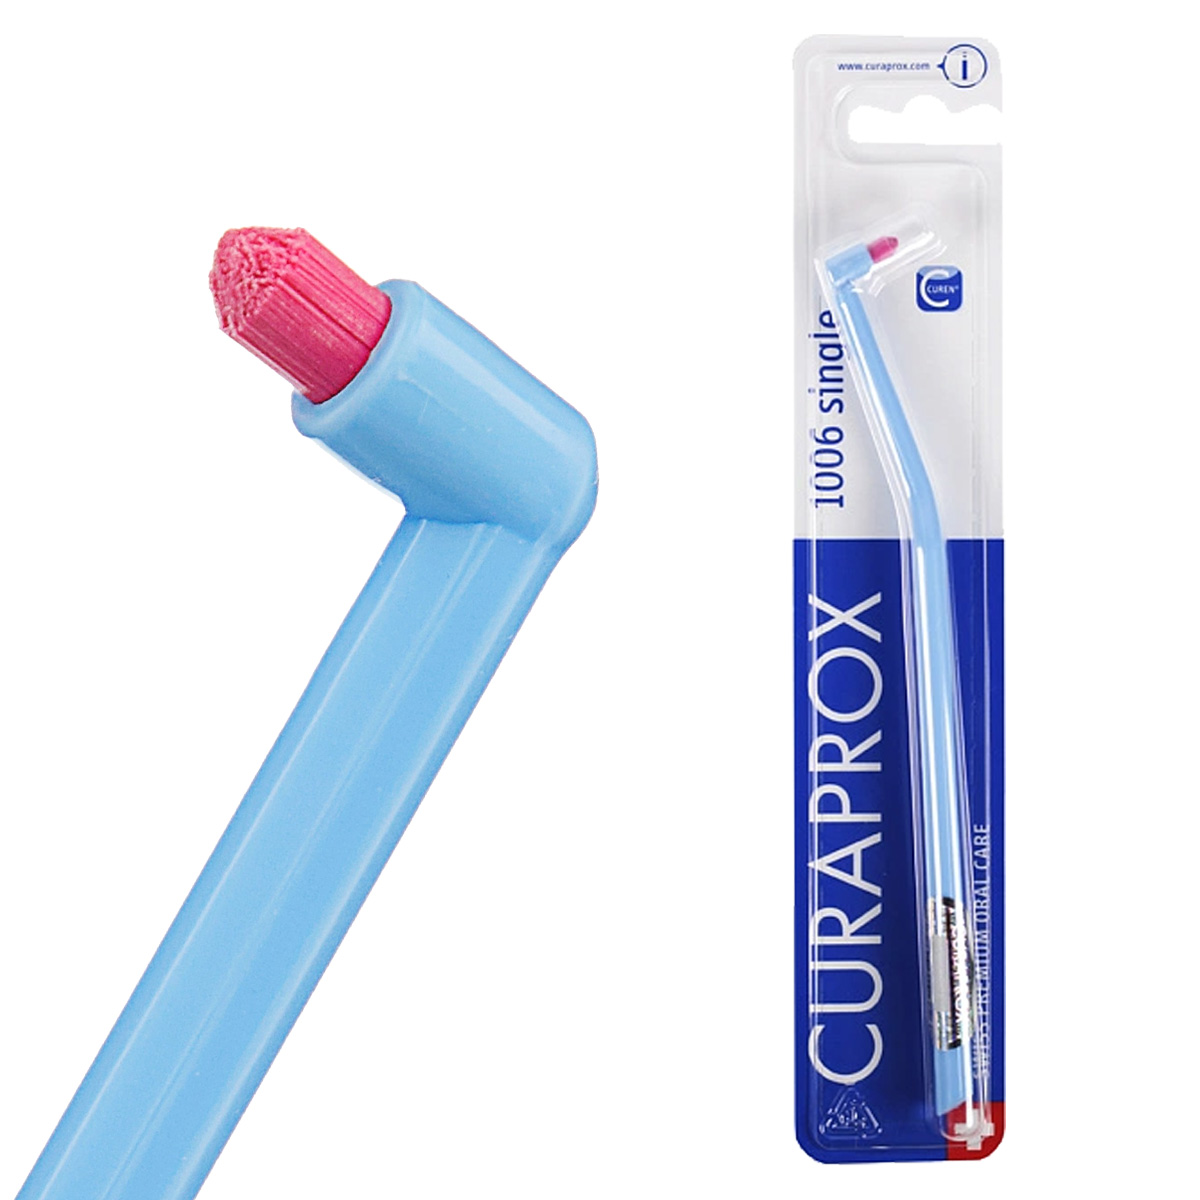 Зубная щетка Curaprox зубная щетка с широкой головкой и супертонкими щетинками create ср жесткость синяя